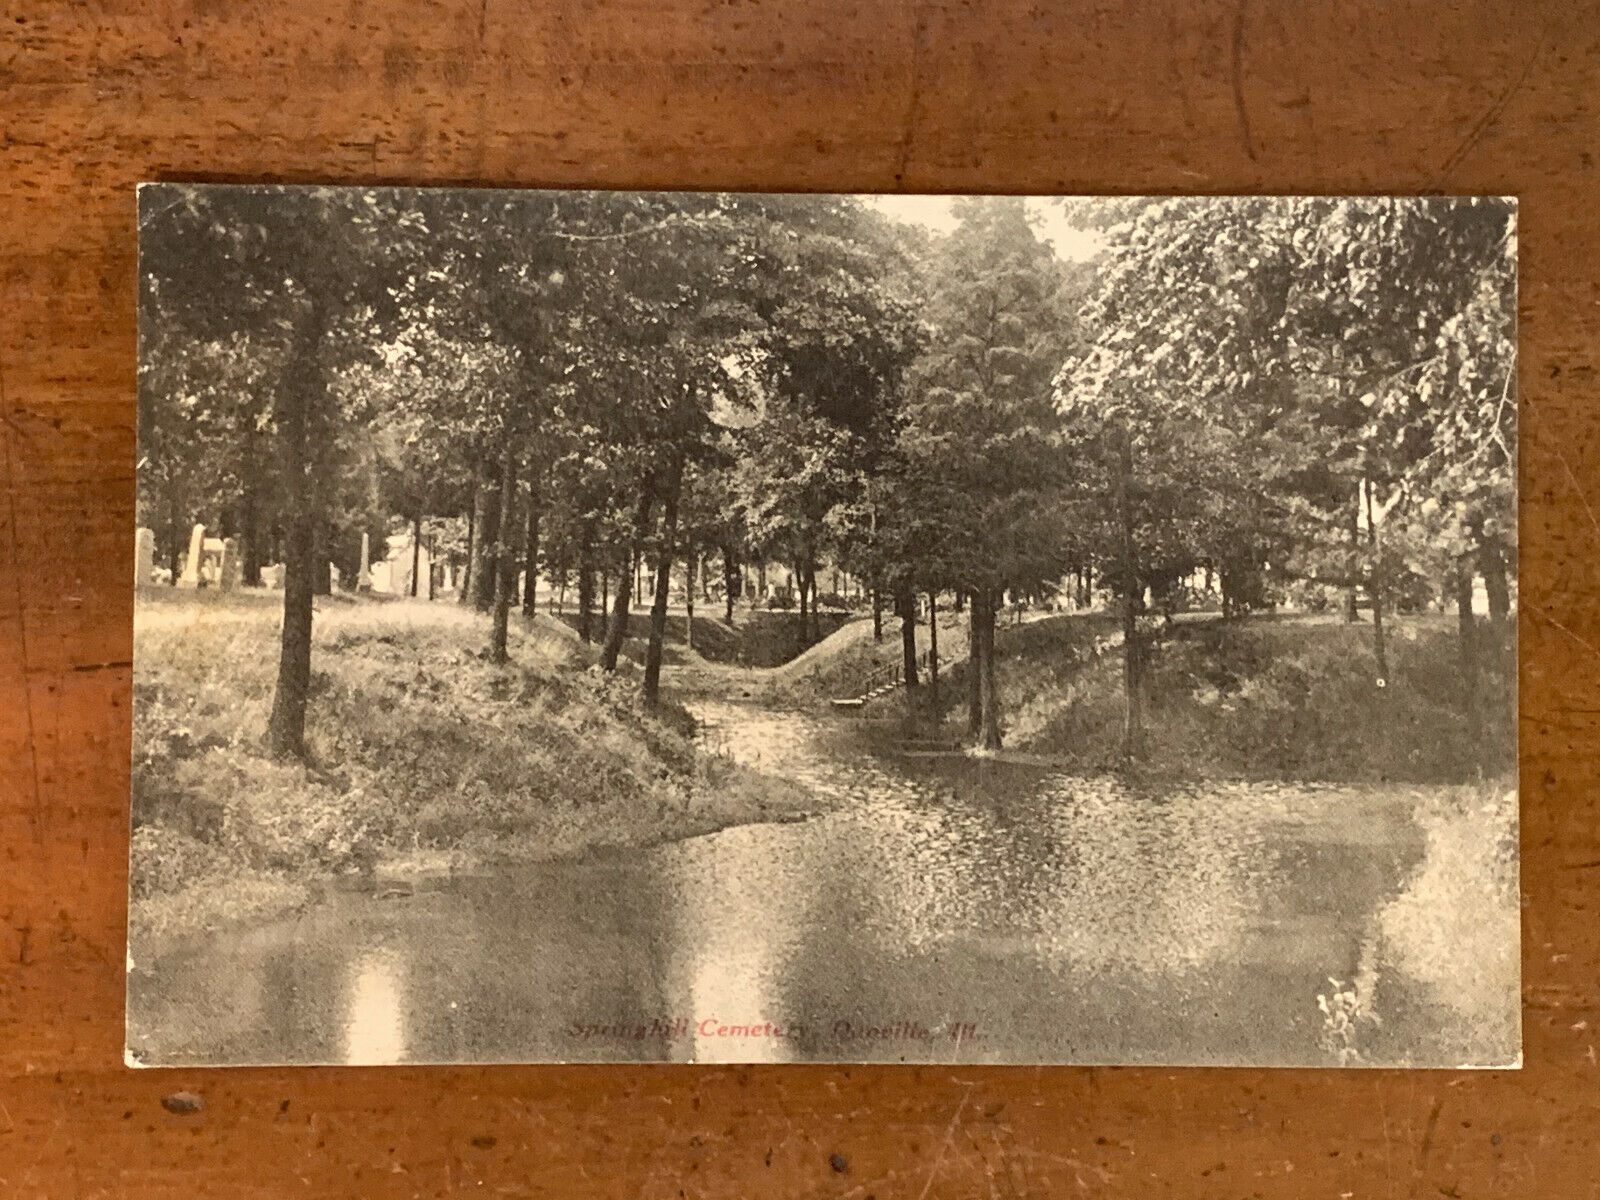 Illinois, Danville, Springhill Cemetery, PM 1908